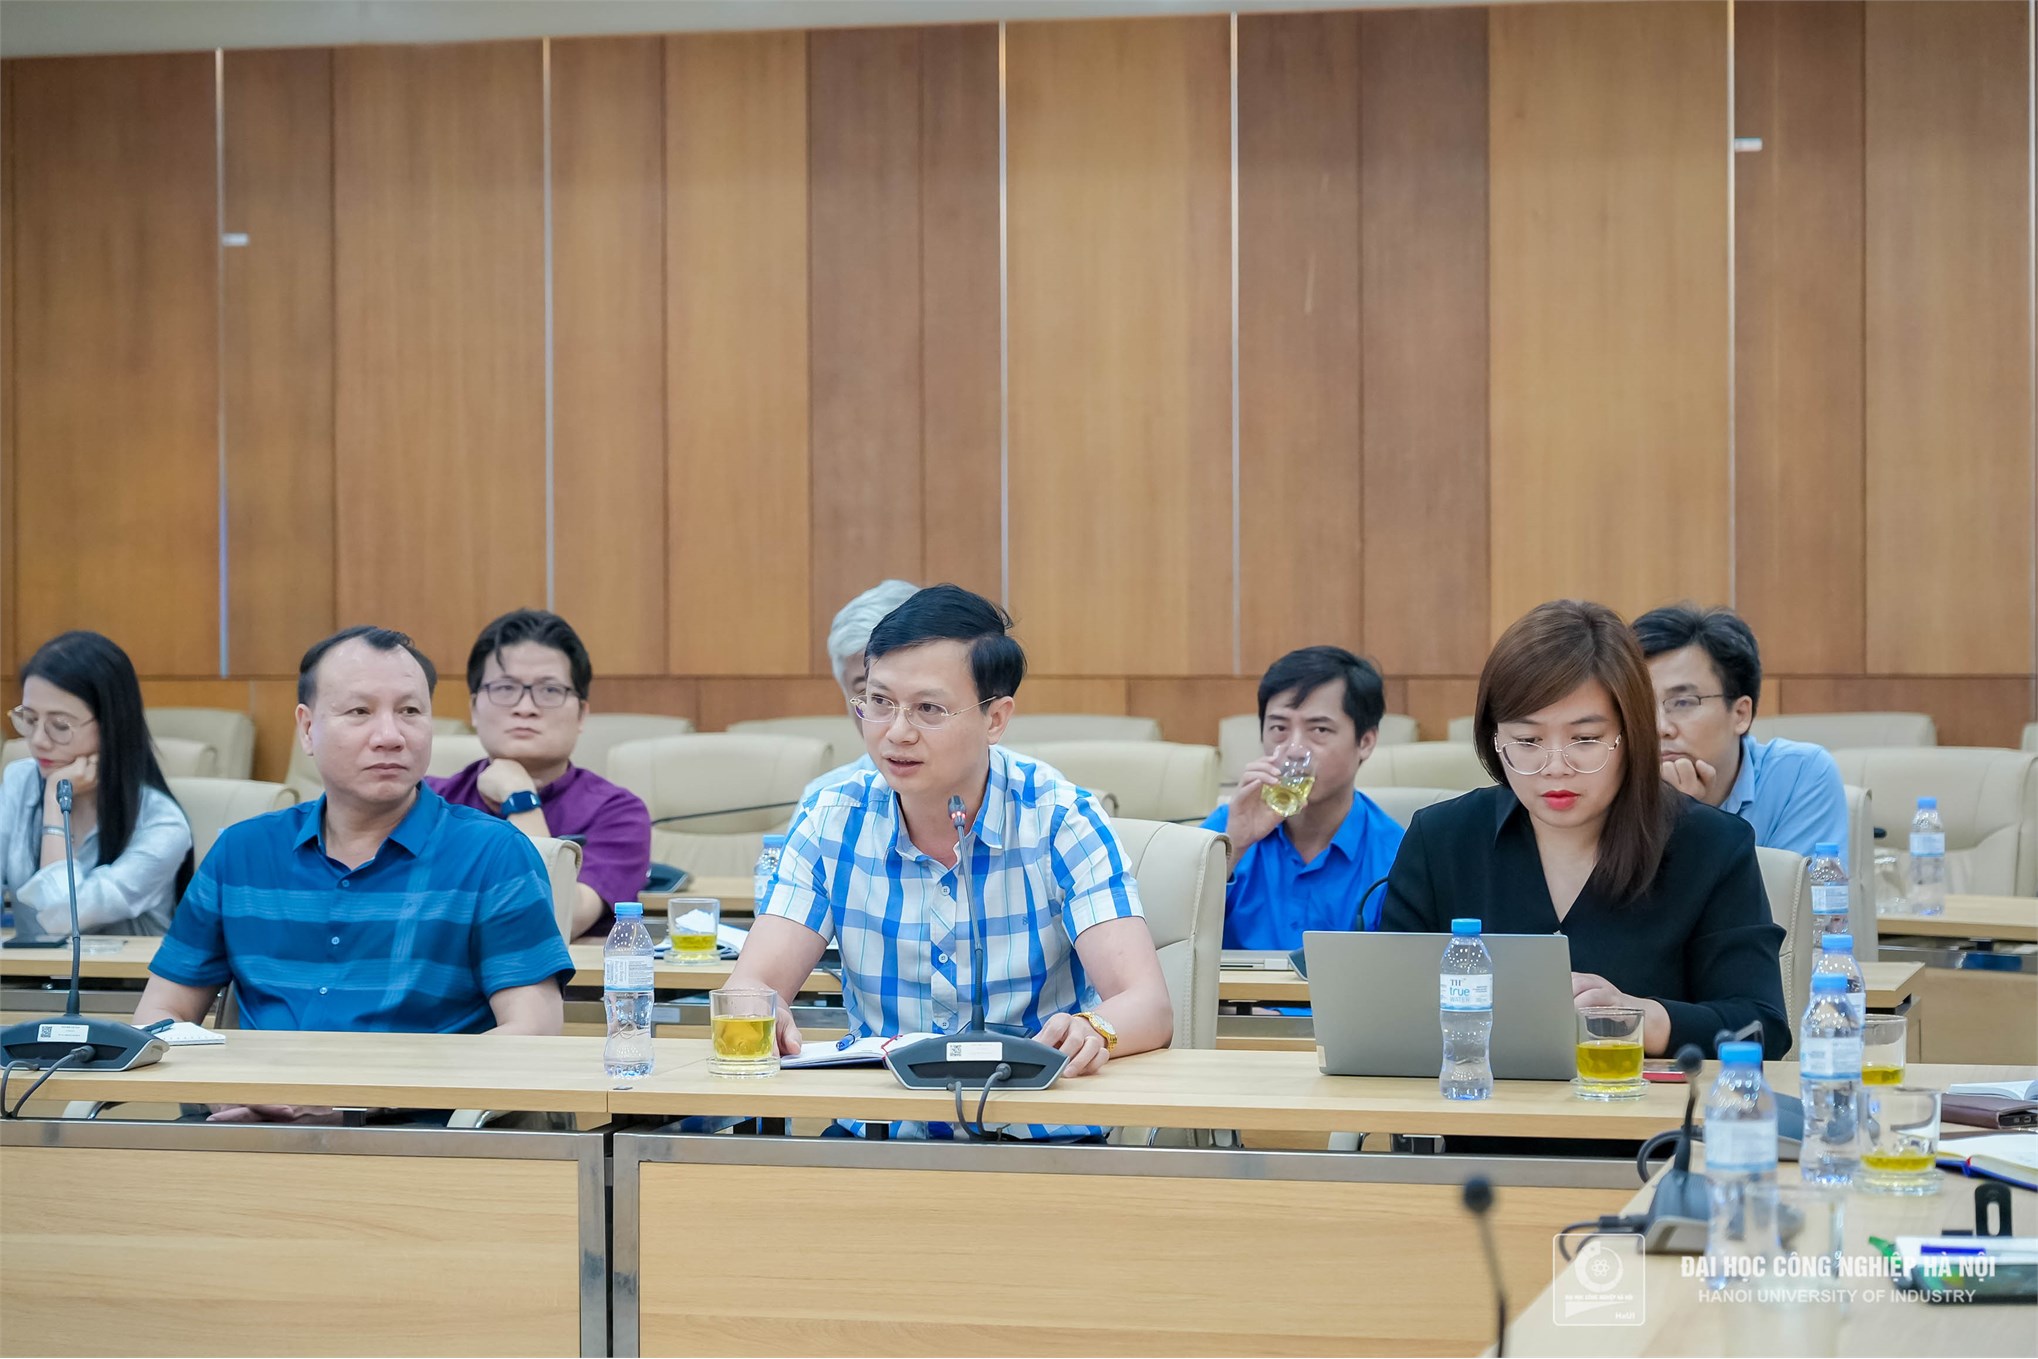 Chia sẻ kinh nghiệm xây dựng chiến lược phát triển Nhà trường giữa Trường Đại học Công nghiệp Hà Nội và Trường Đại học Sư phạm Hà Nội 